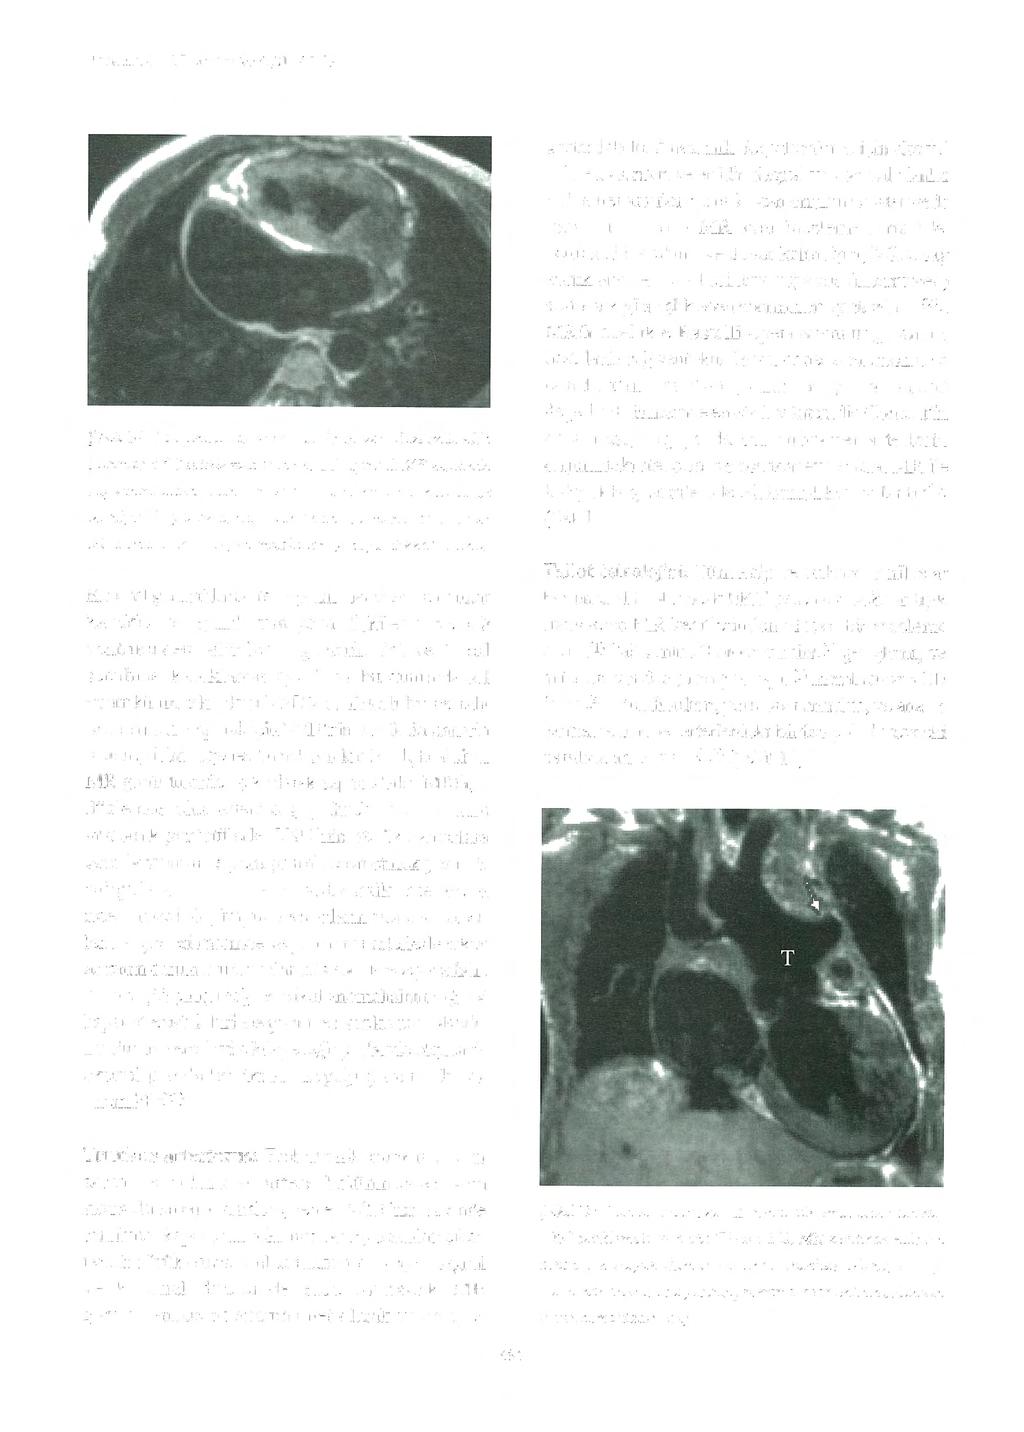 Türk K ard i yol Dem Arş 2003;31 :687-99 Şekili O: Çift ç ıkışlı sağ vemrikiil. Transvers düzlemde elde olunmuş EKG tetiklenıeli spin eko Tl-ağırlıklı MR kesitinde sağ ventrikülden çıkan.